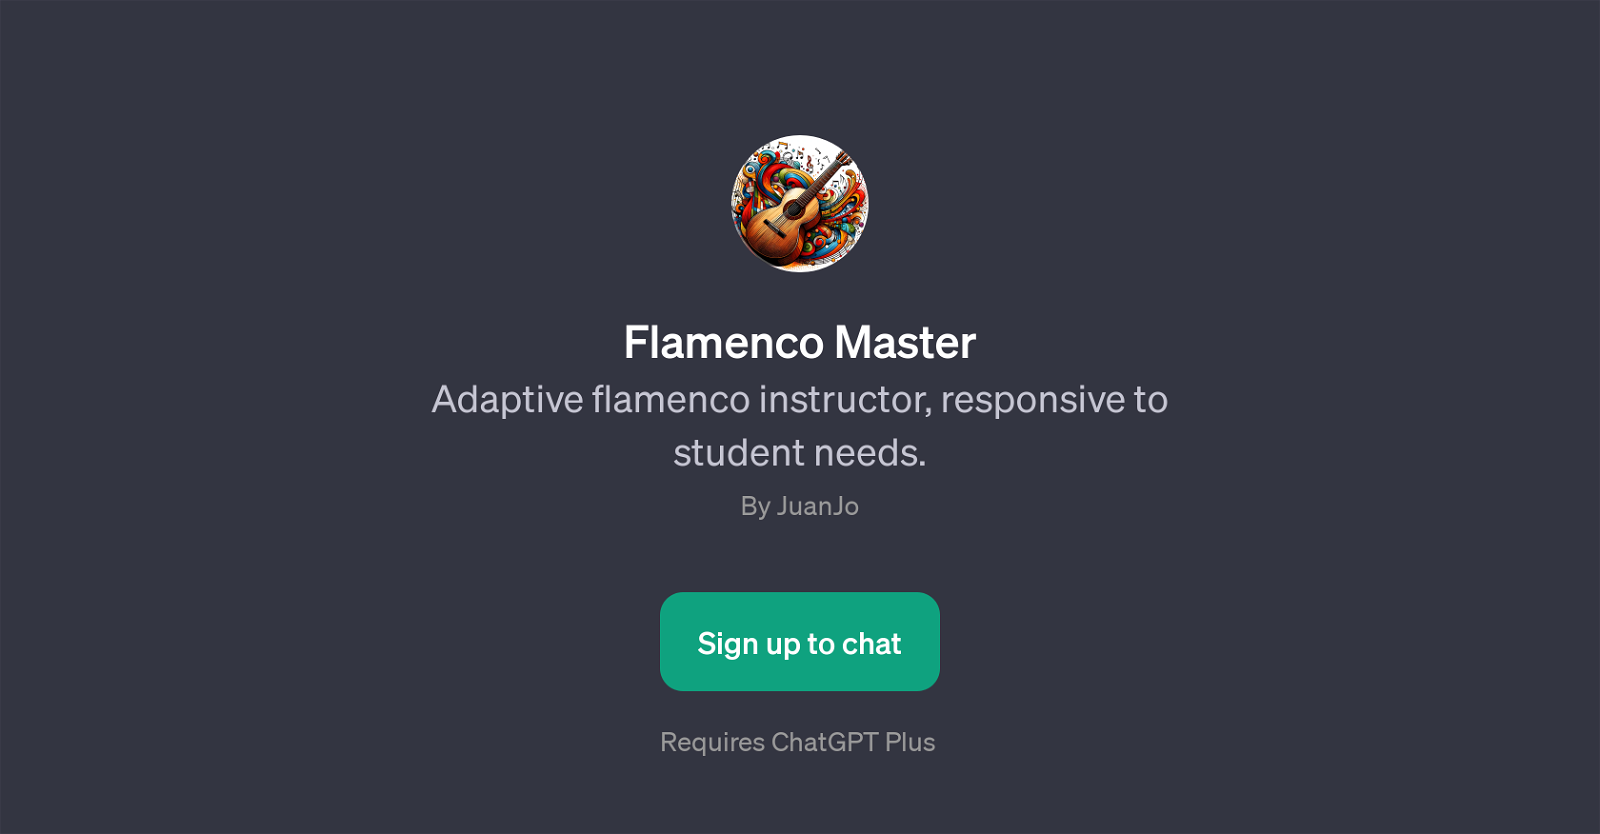 Flamenco Master website